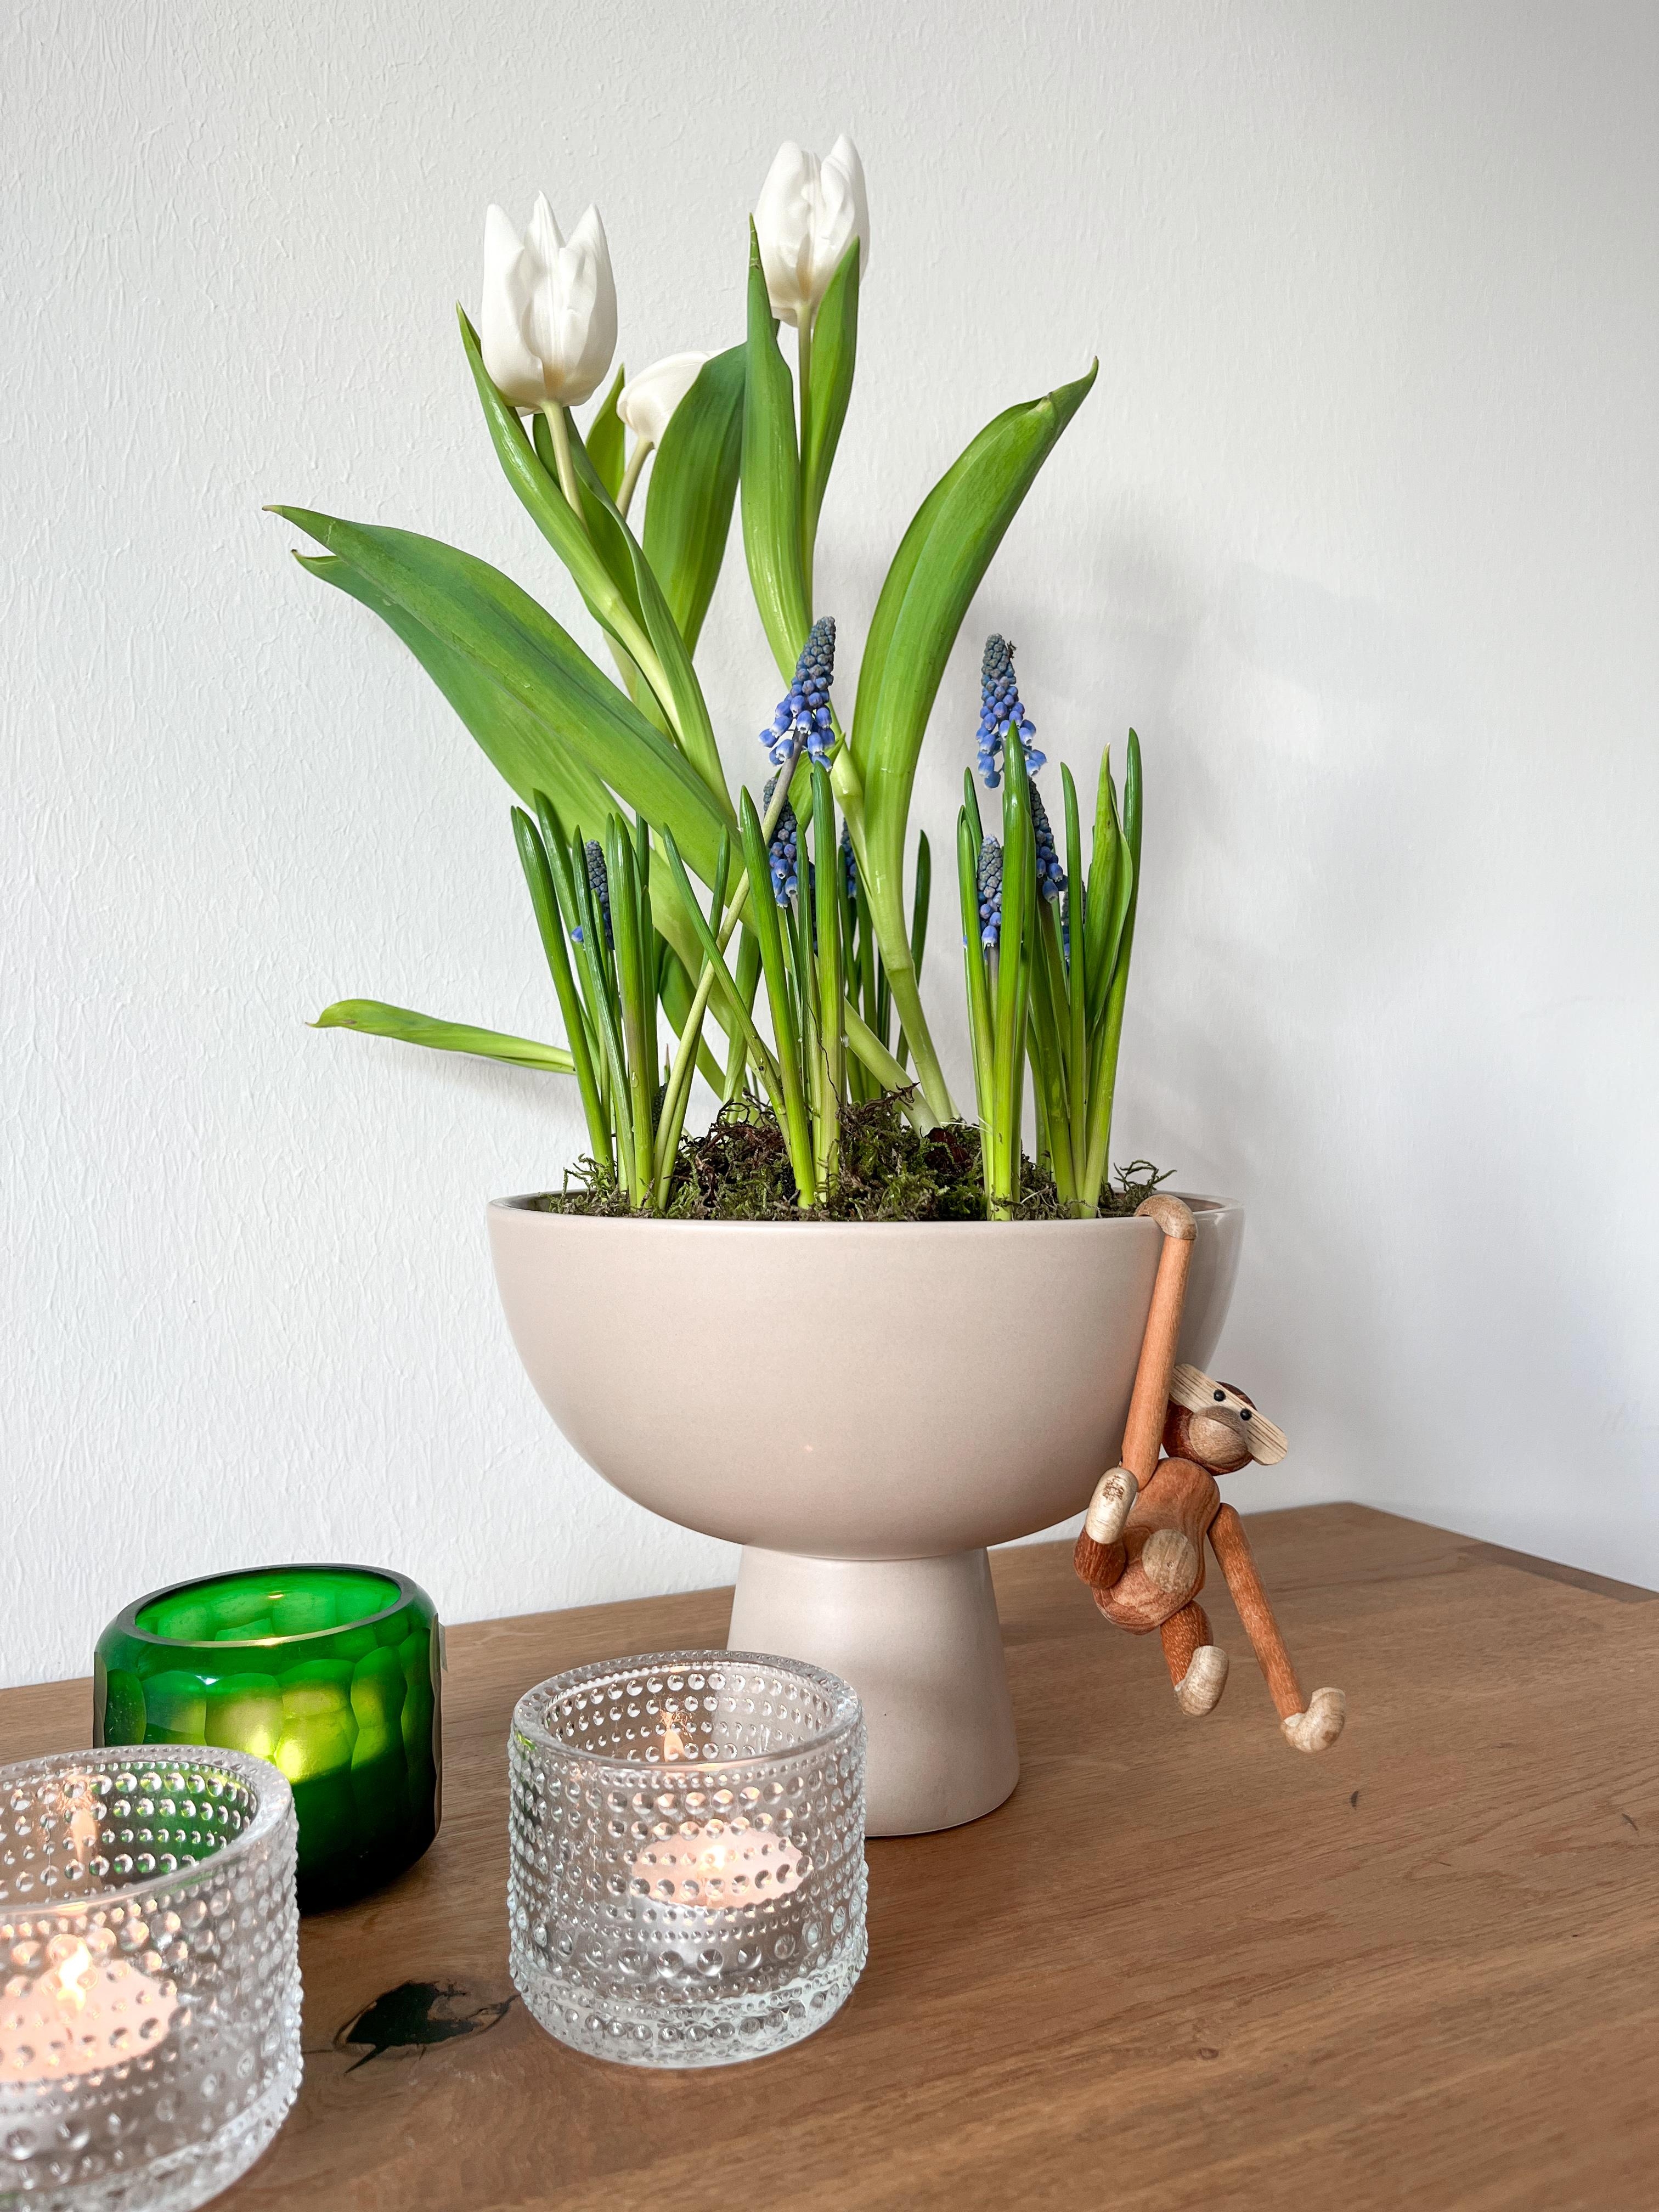 Frühlingsgefühle

#flowerbowl #frühling #spring #homedecor #frischeblumen #tulpen #blumenundkerzen